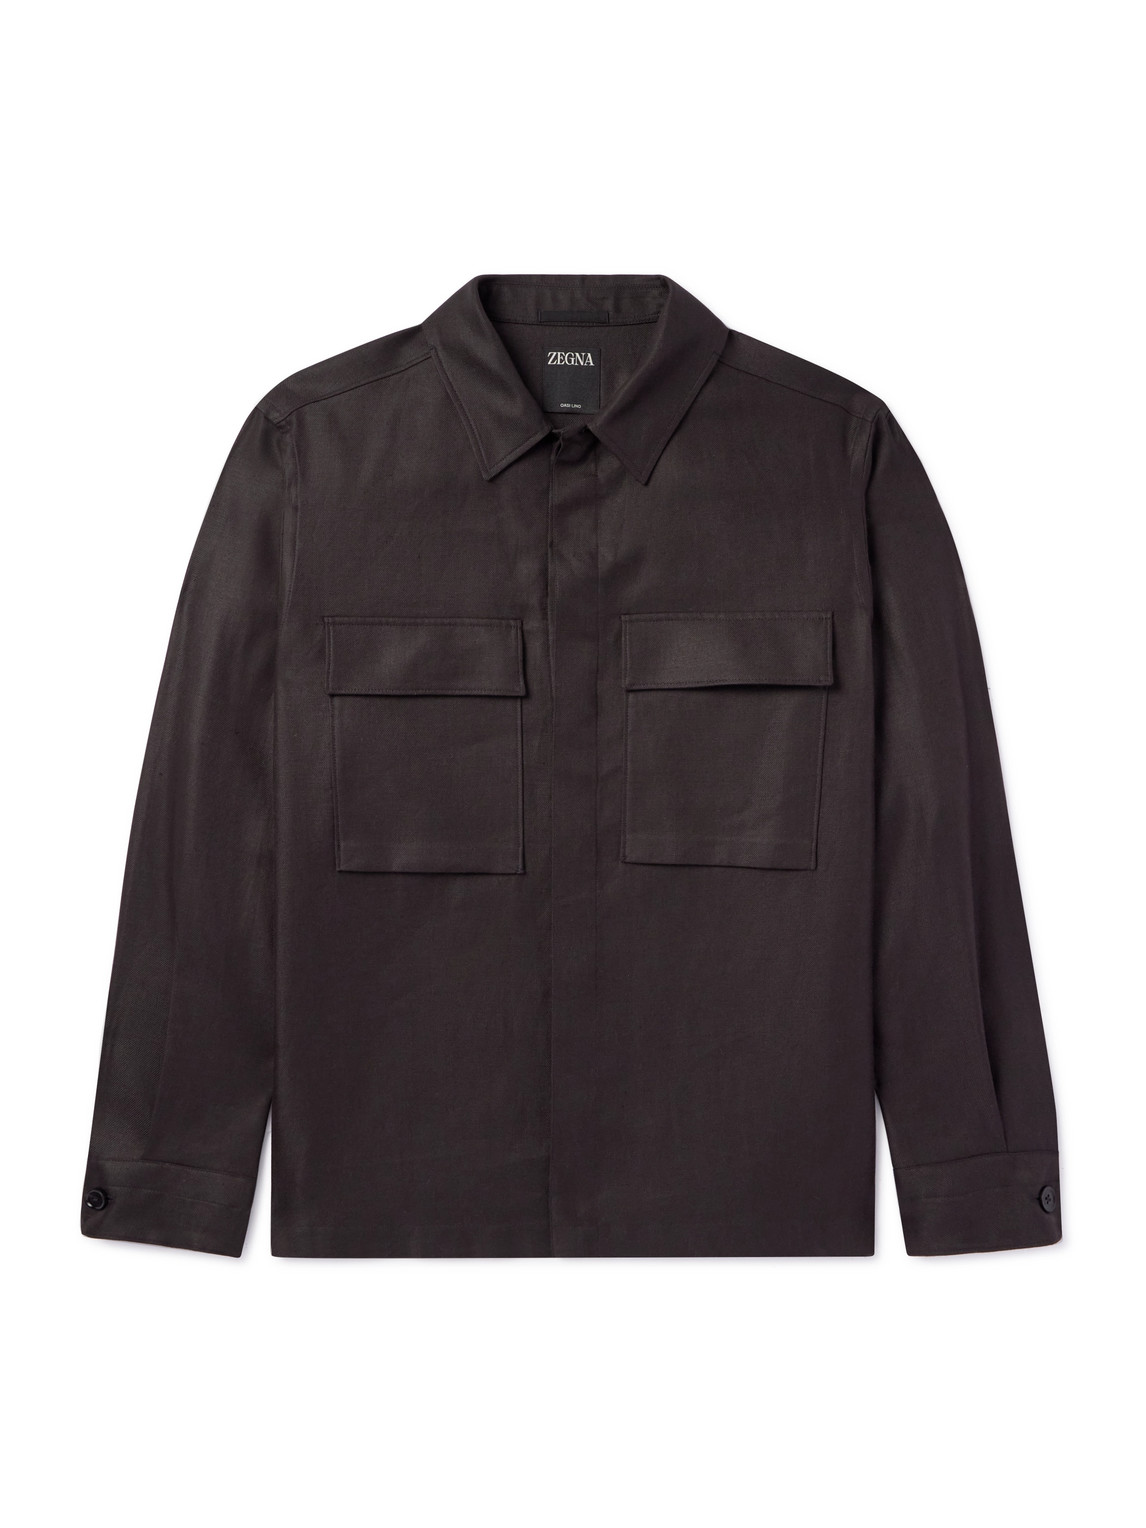 Zegna Men's Oasi Linen Full-zip Overshirt In Dark Brown Solid